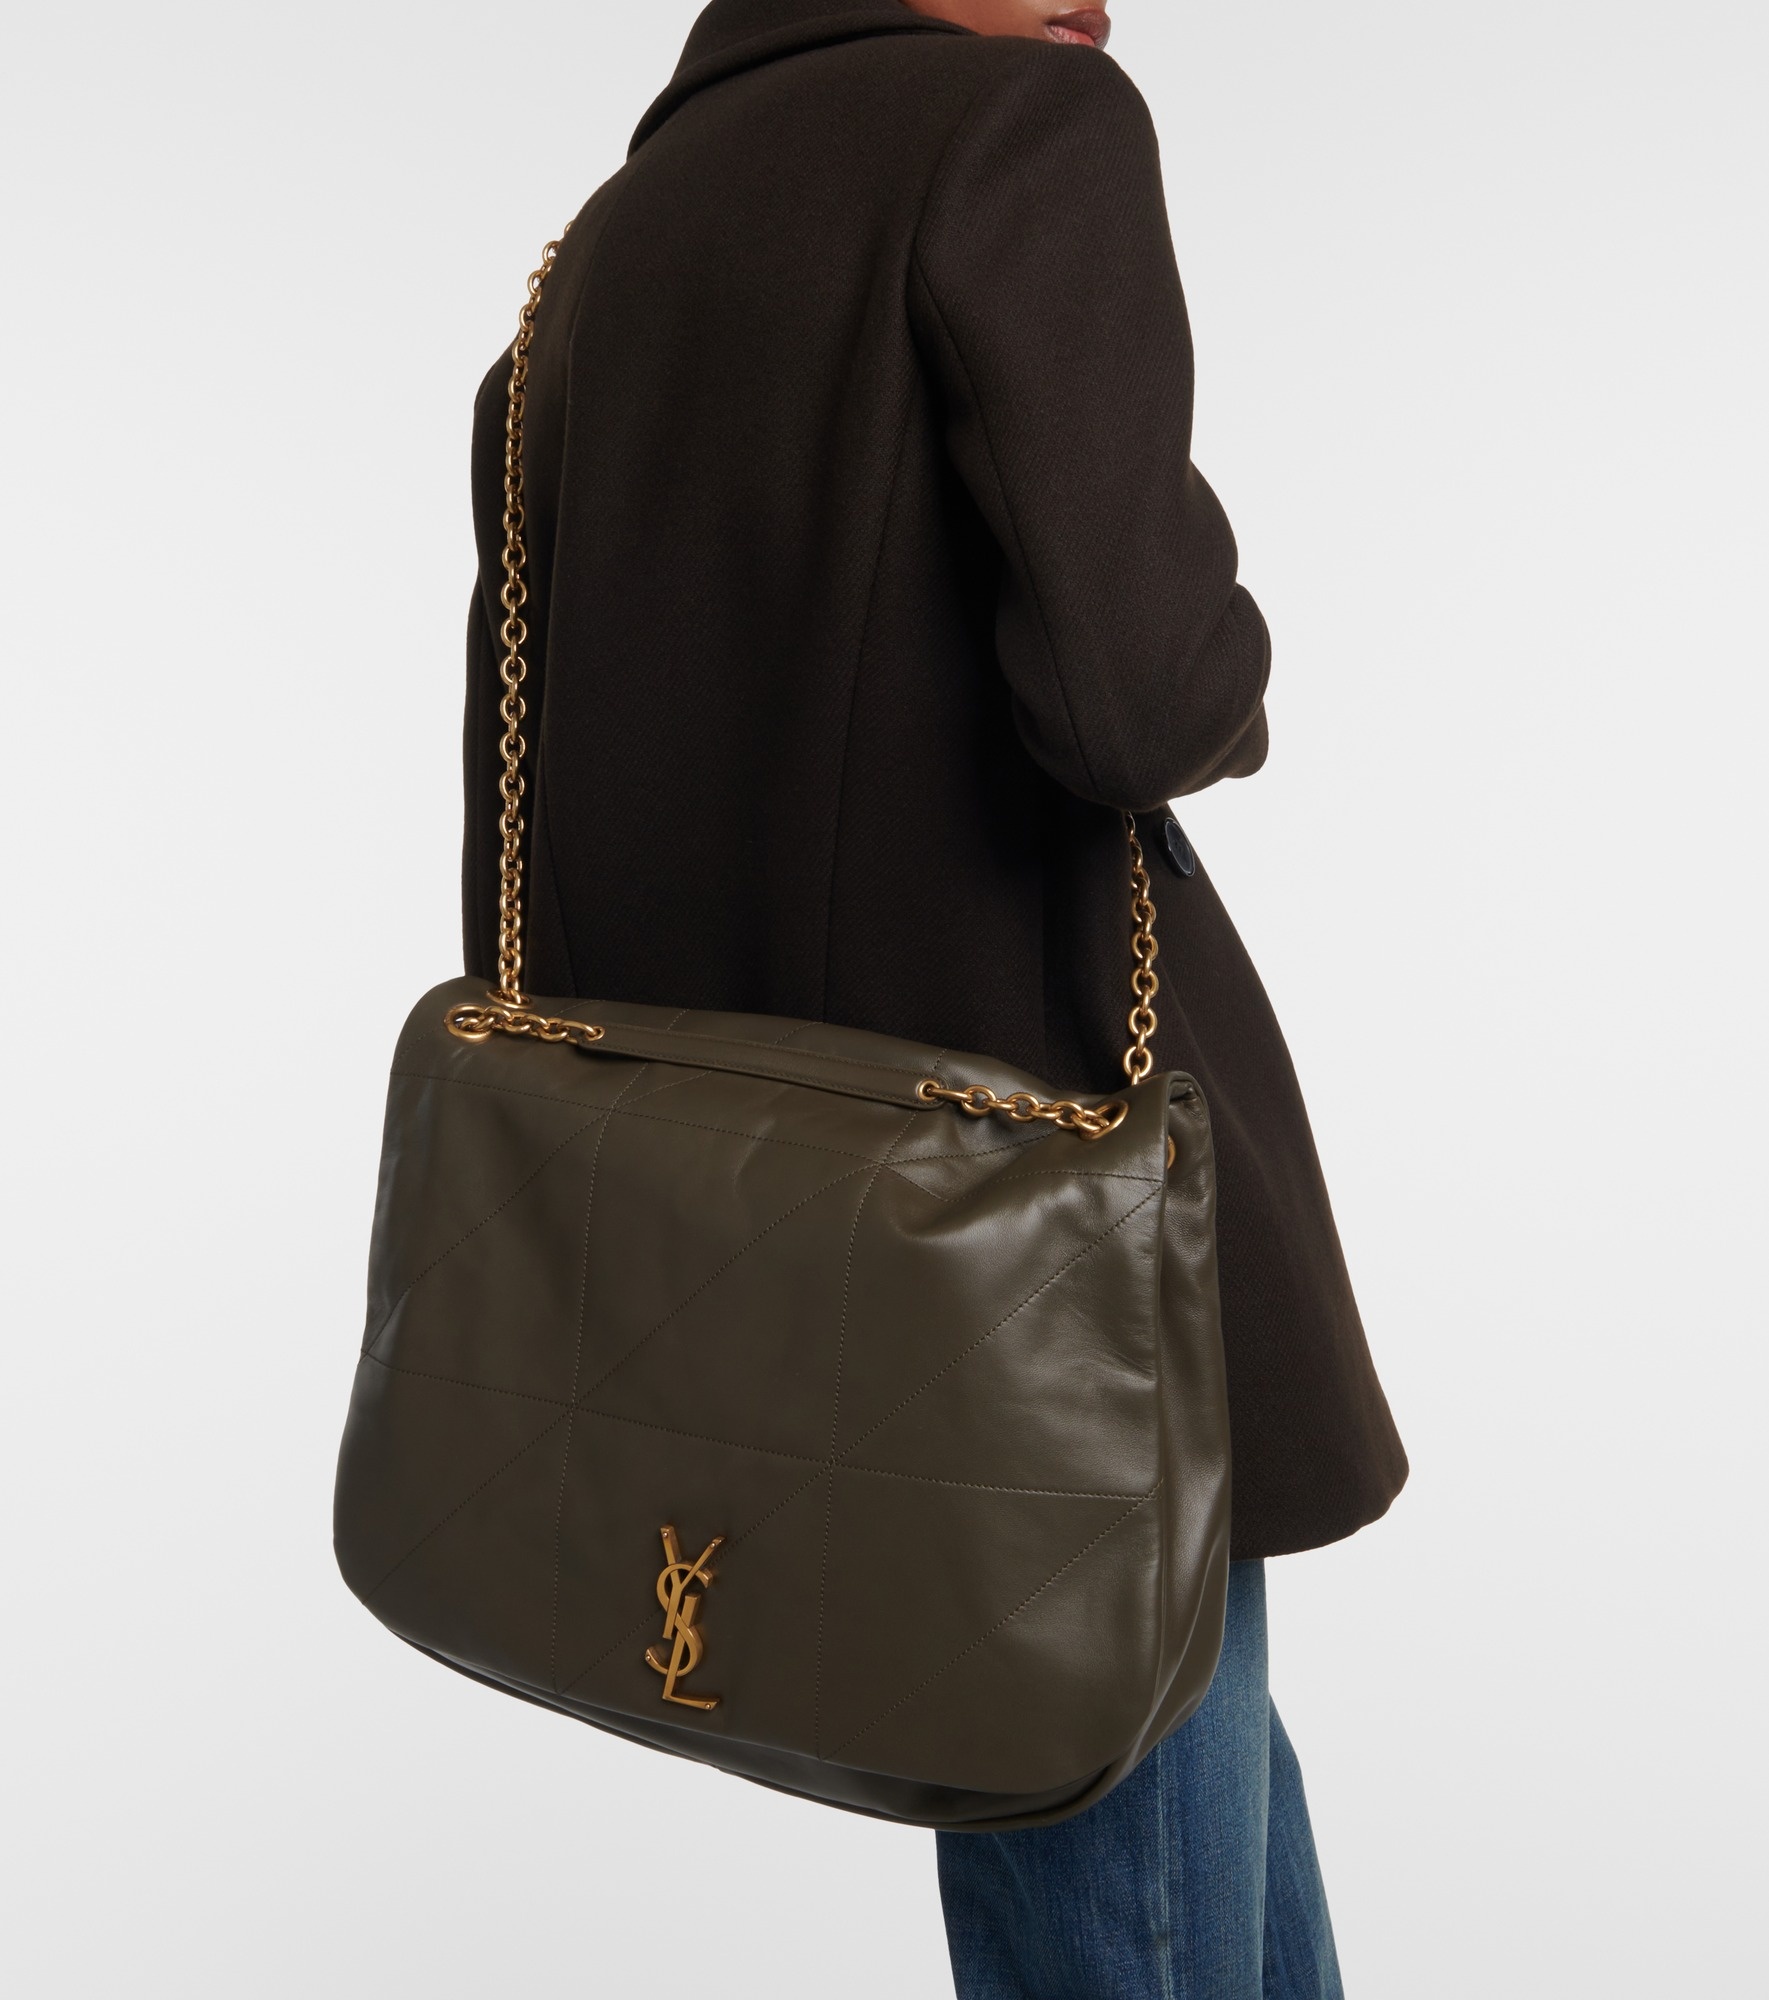 Jamie 4.3 leather shoulder bag - 6